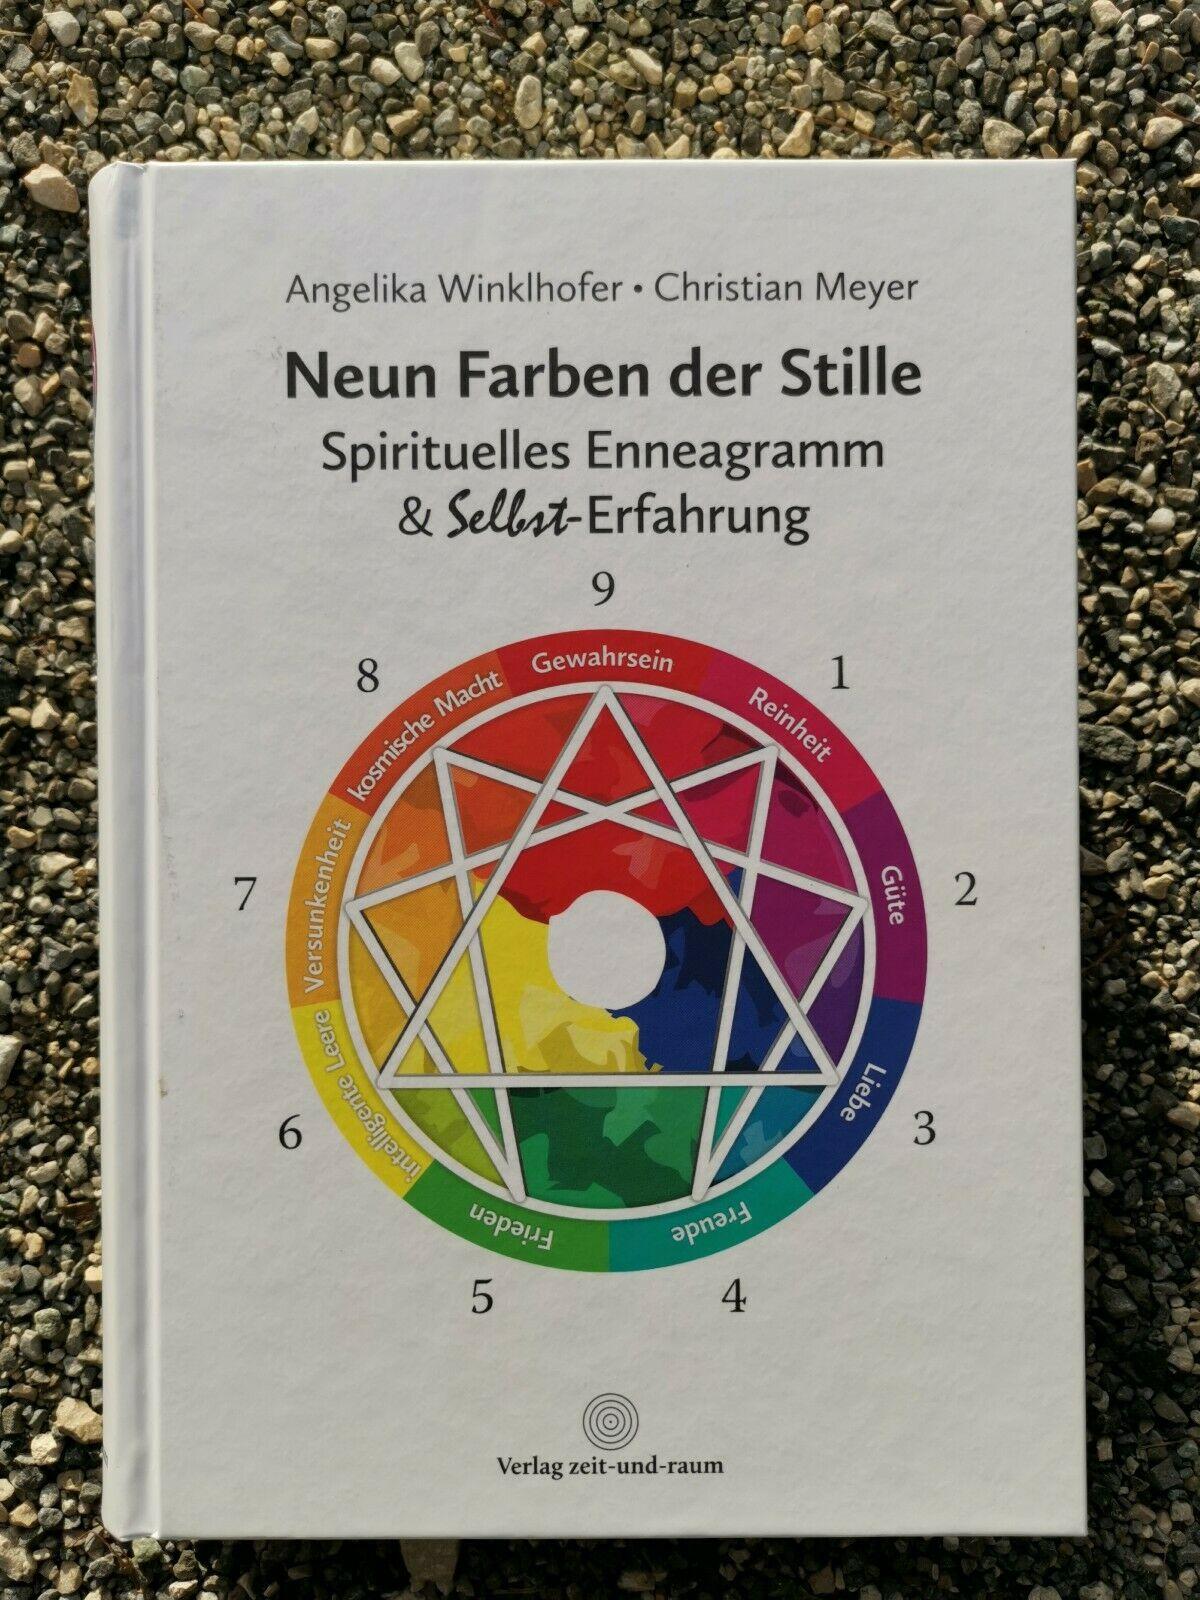 Neun Farben der Stille: Spirituelles Enneagramm & Selbst-Erfahrung, Angelika Winklhofer, Christian Meyer, Jana Krubert